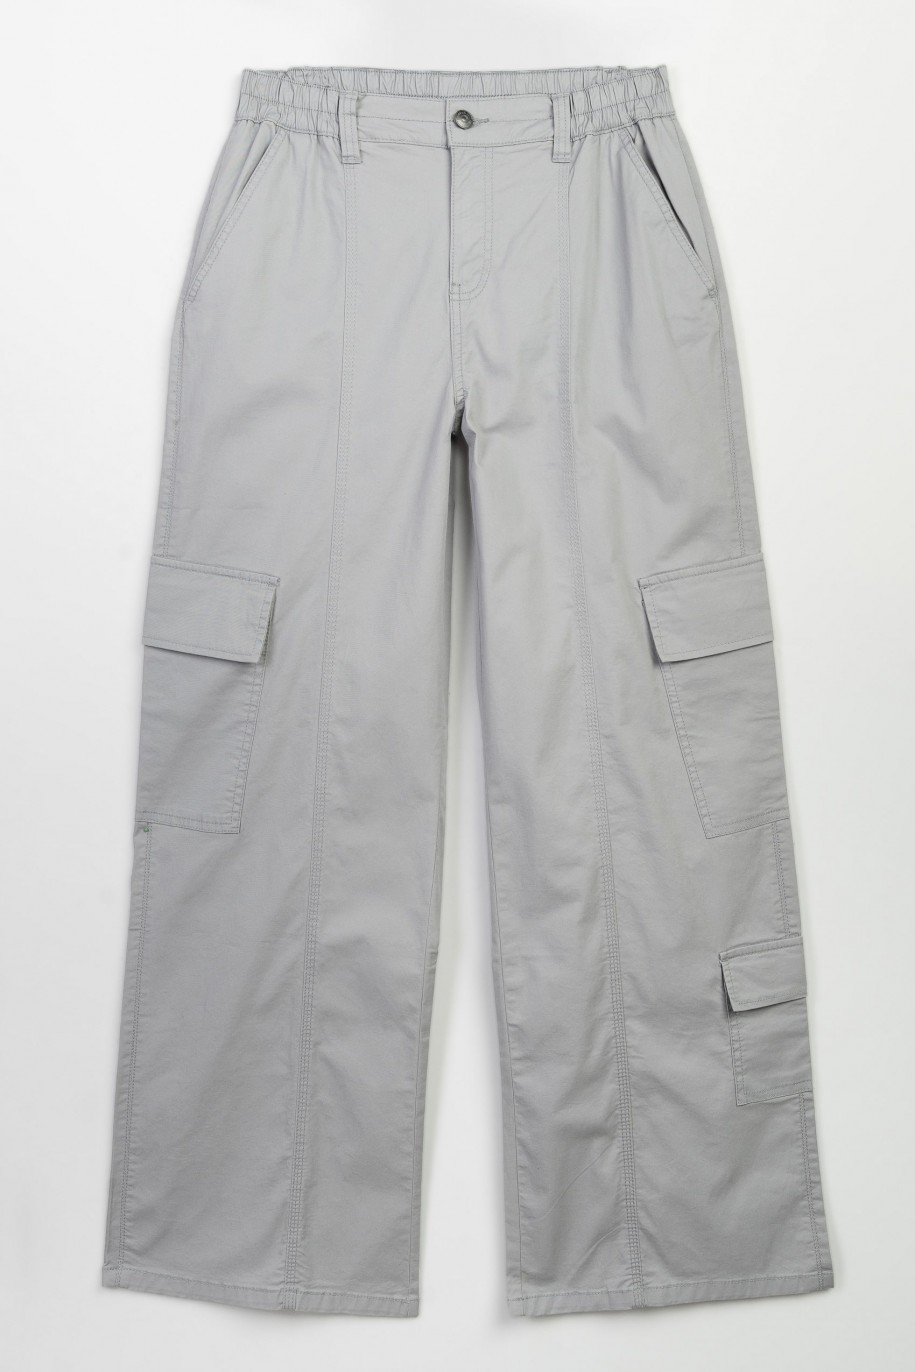 Szare spodnie z szerokimi nogawkami z przestrzennymi kieszeniami - 47348